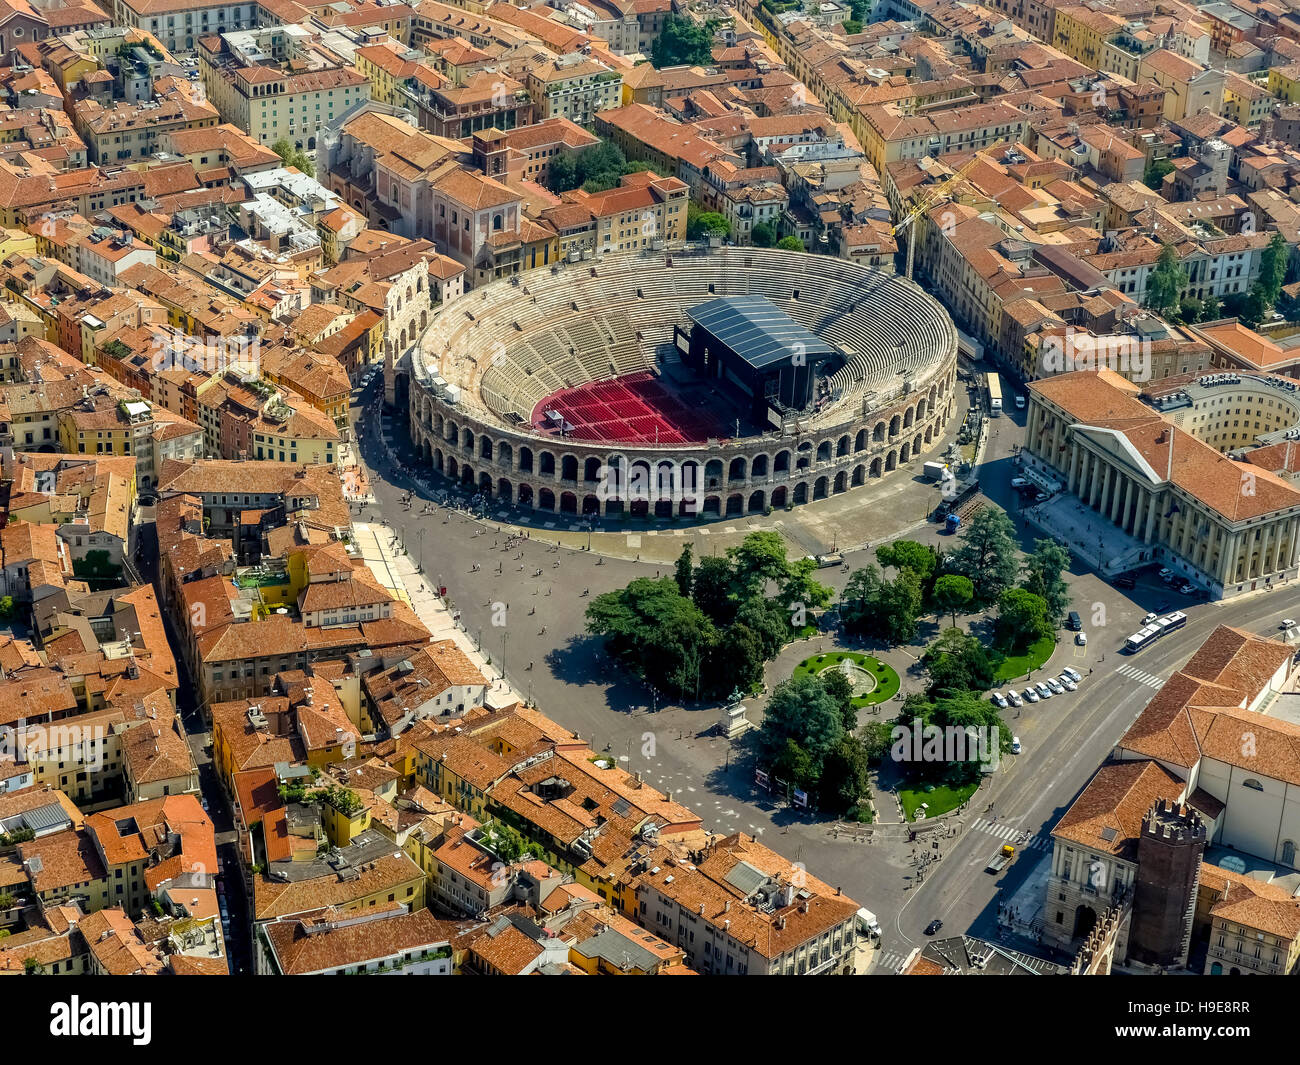 Vista aerea, Palazzo Barbieri, Palazzo Barbieri, Arena di Verona Piazza Bra, anfiteatro romano, il centro della città di Verona, Foto Stock